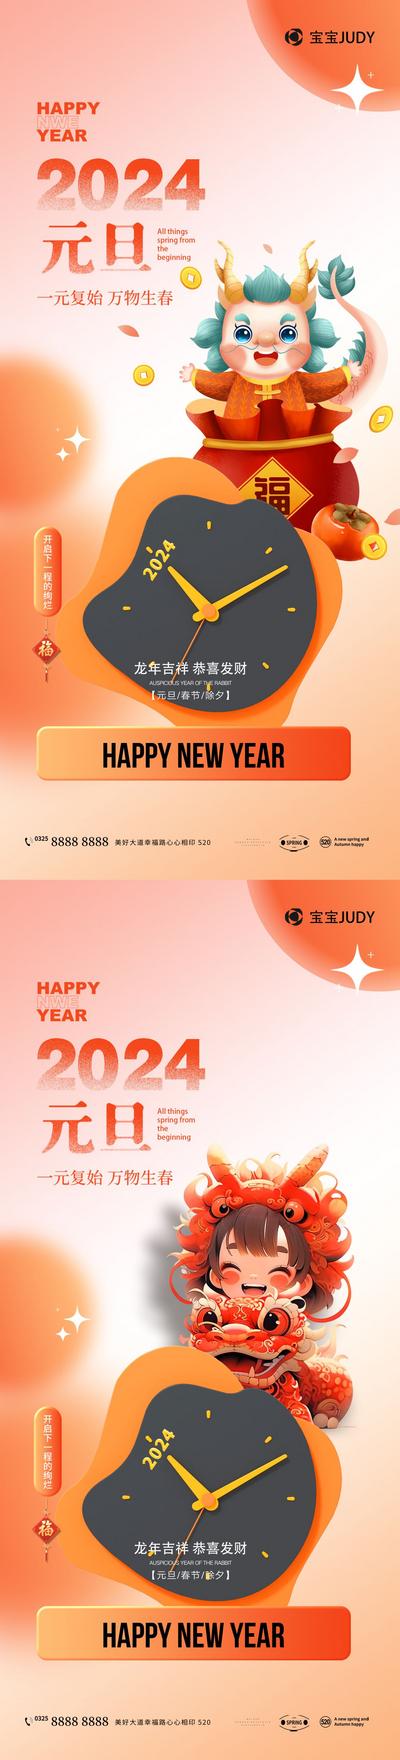 【南门网】广告 海报 节日 元旦 新年 龙年 2024 系列 插画 时钟 钟表